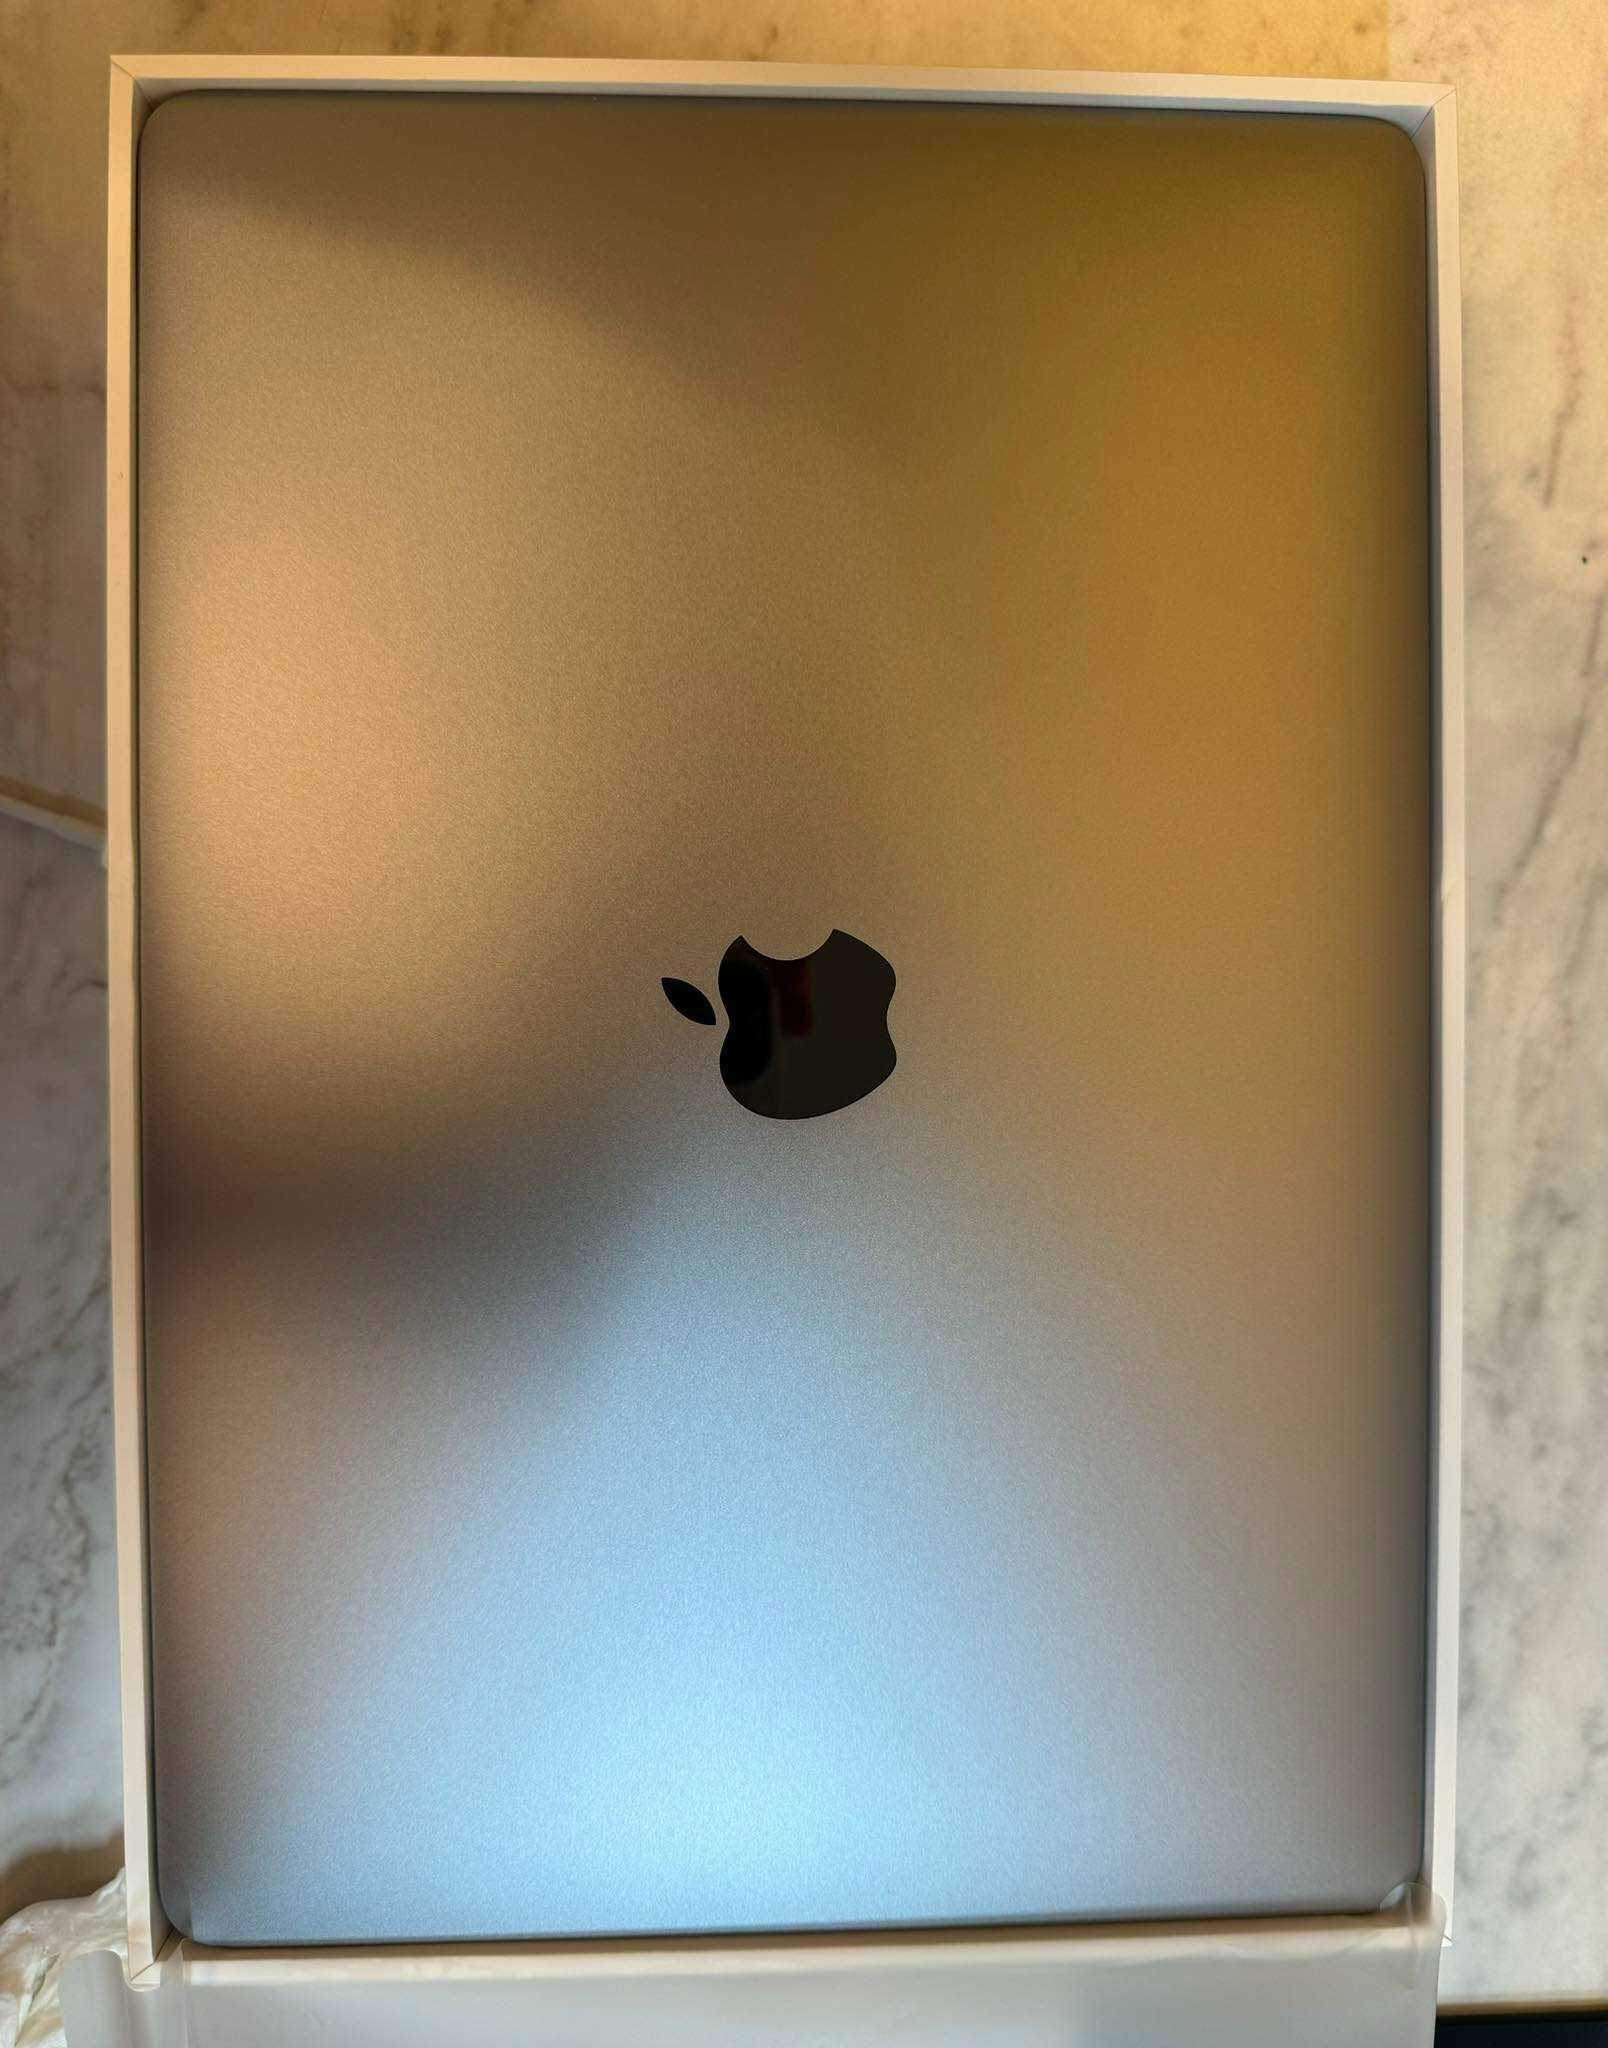 MacBook Air (Retina, 13-inch,2018)